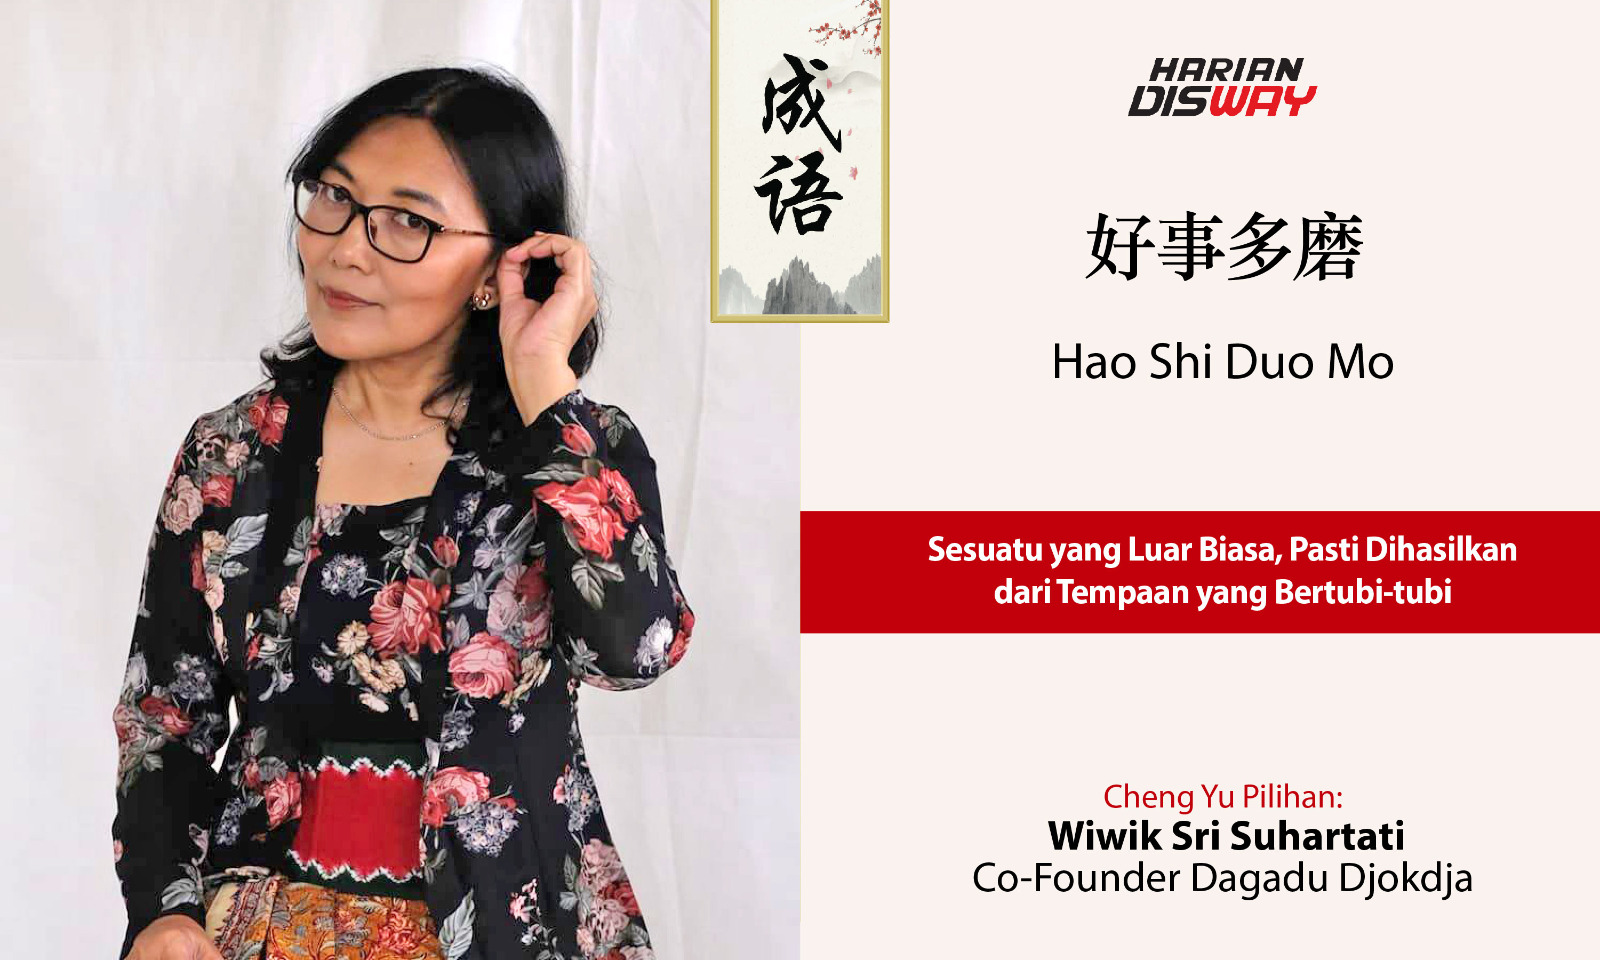 Cheng Yu Pilihan Co-Founder Dagadu Djokdja Wiwik Sri Suhartati:  Hao Shi Duo Mo